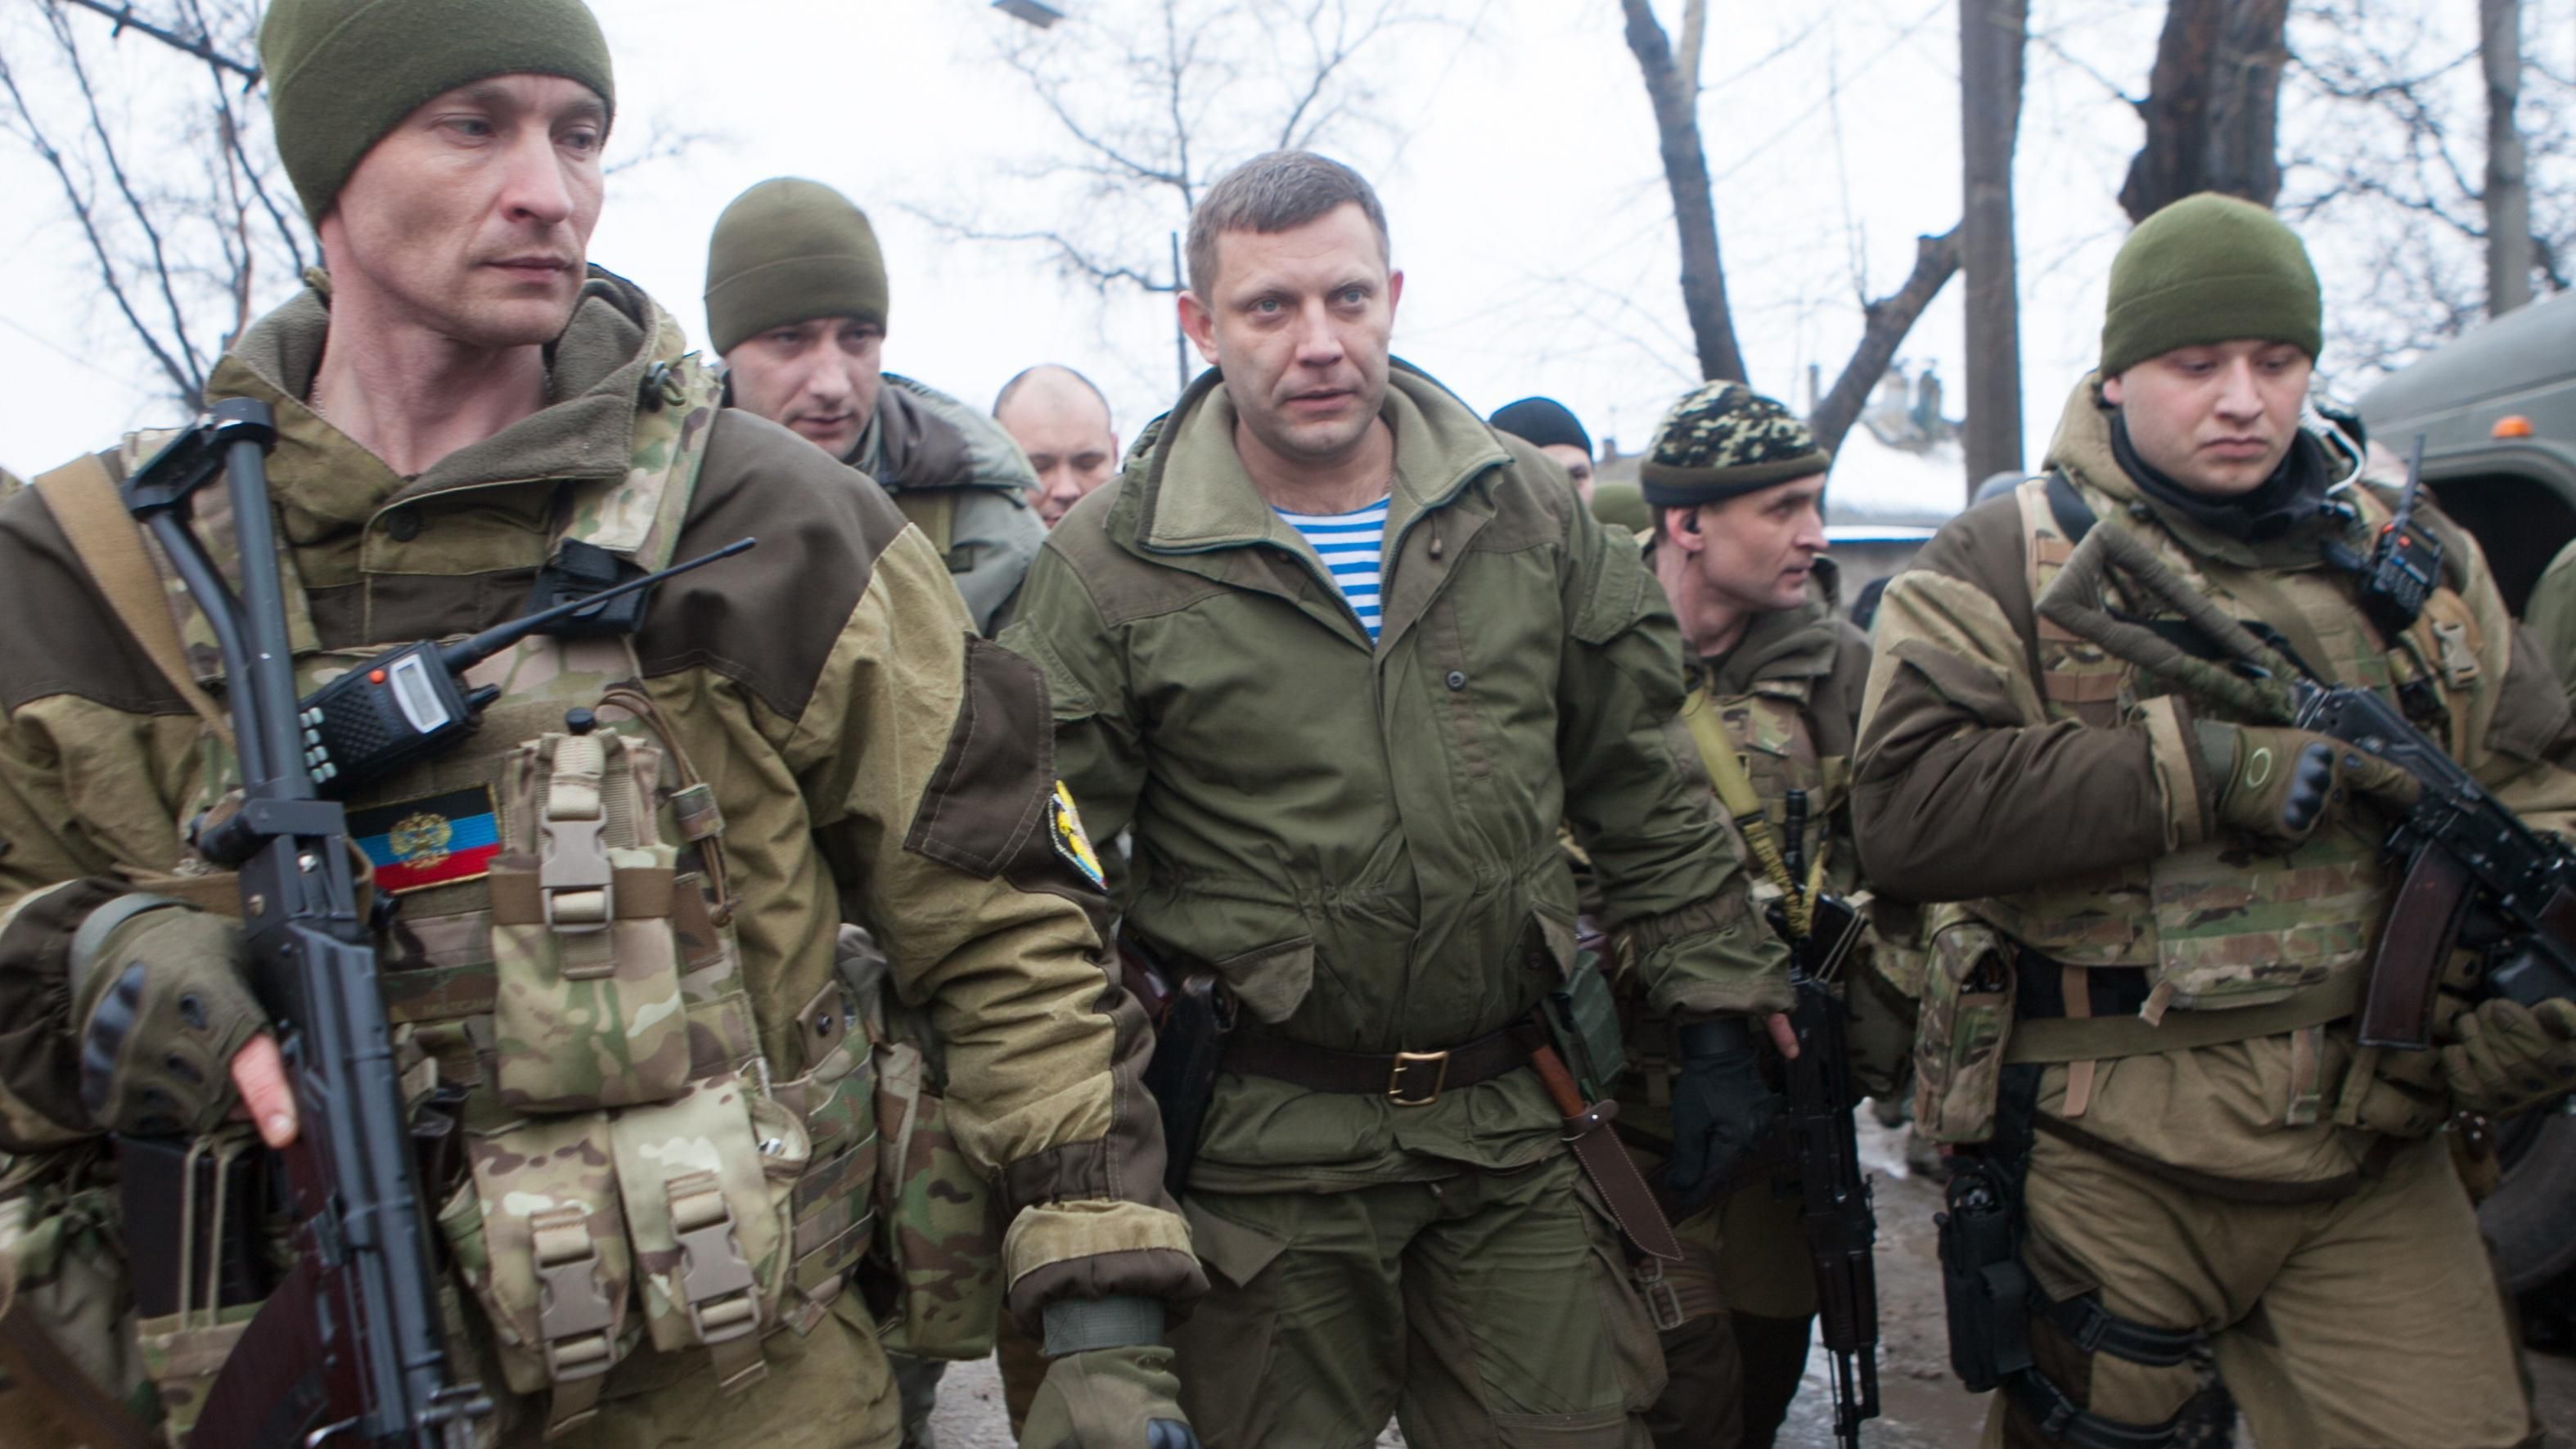 "Бандера прийде – порядок наведе": колишній ватажок бойовиків на Донбасі погрожує Захарченку 